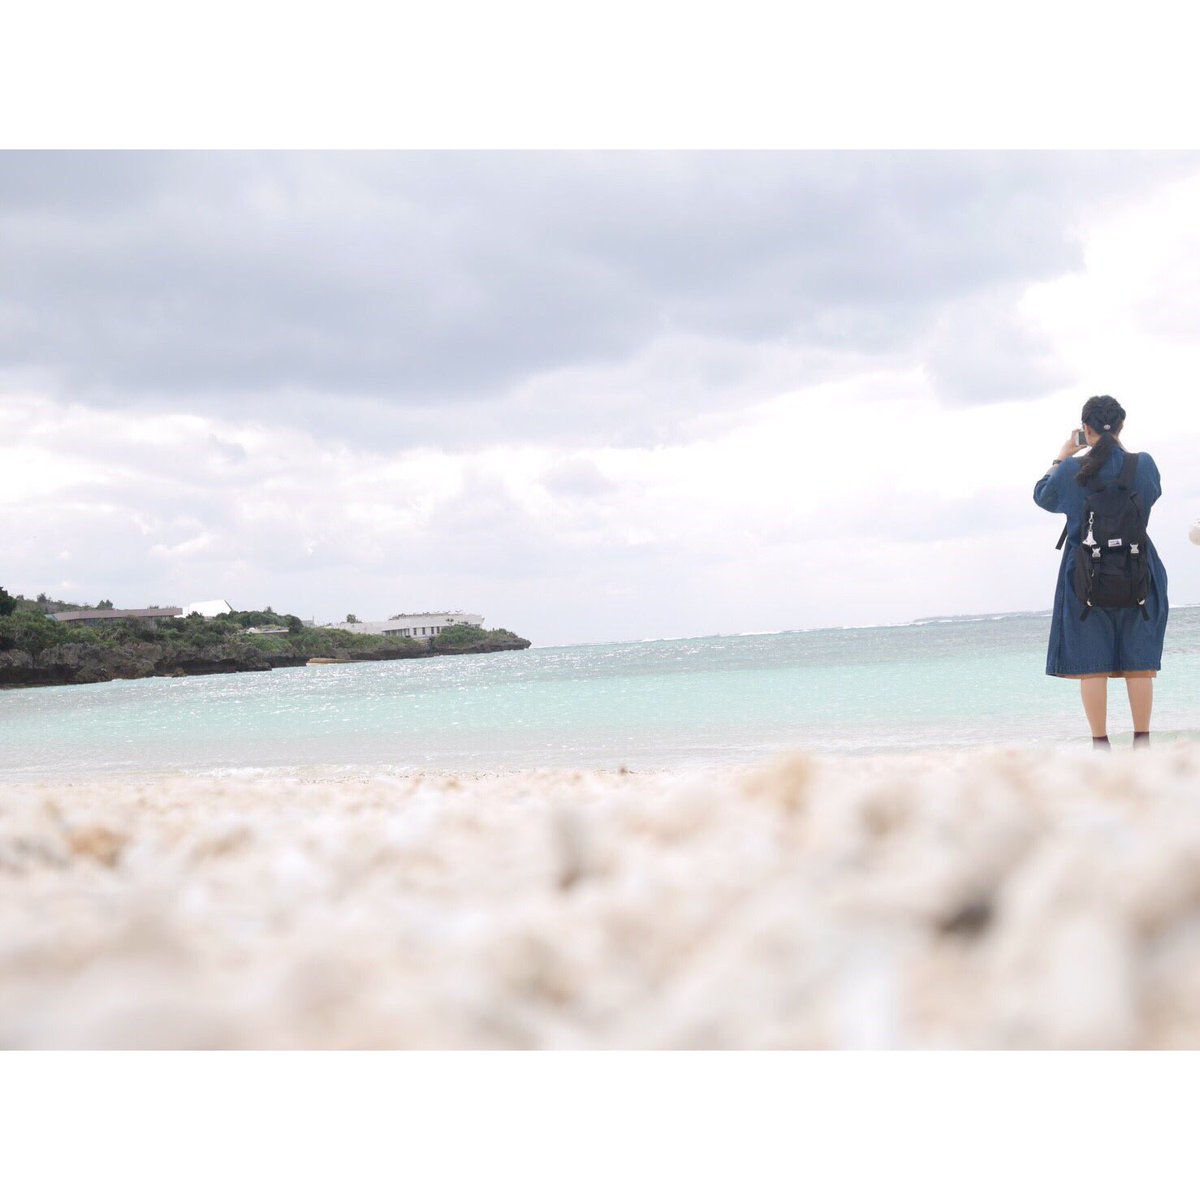 おゆず 写真 No Twitter 海を撮る私を撮る友達 写真で伝えたい私の世界 ファインダー越しの私の世界 写真好きな人と繋がりたい 写真撮っている人と繋がりたい お洒落さんと繋がりたい Okinawa 沖縄 おゆず写真集 Beautifulworld T Co